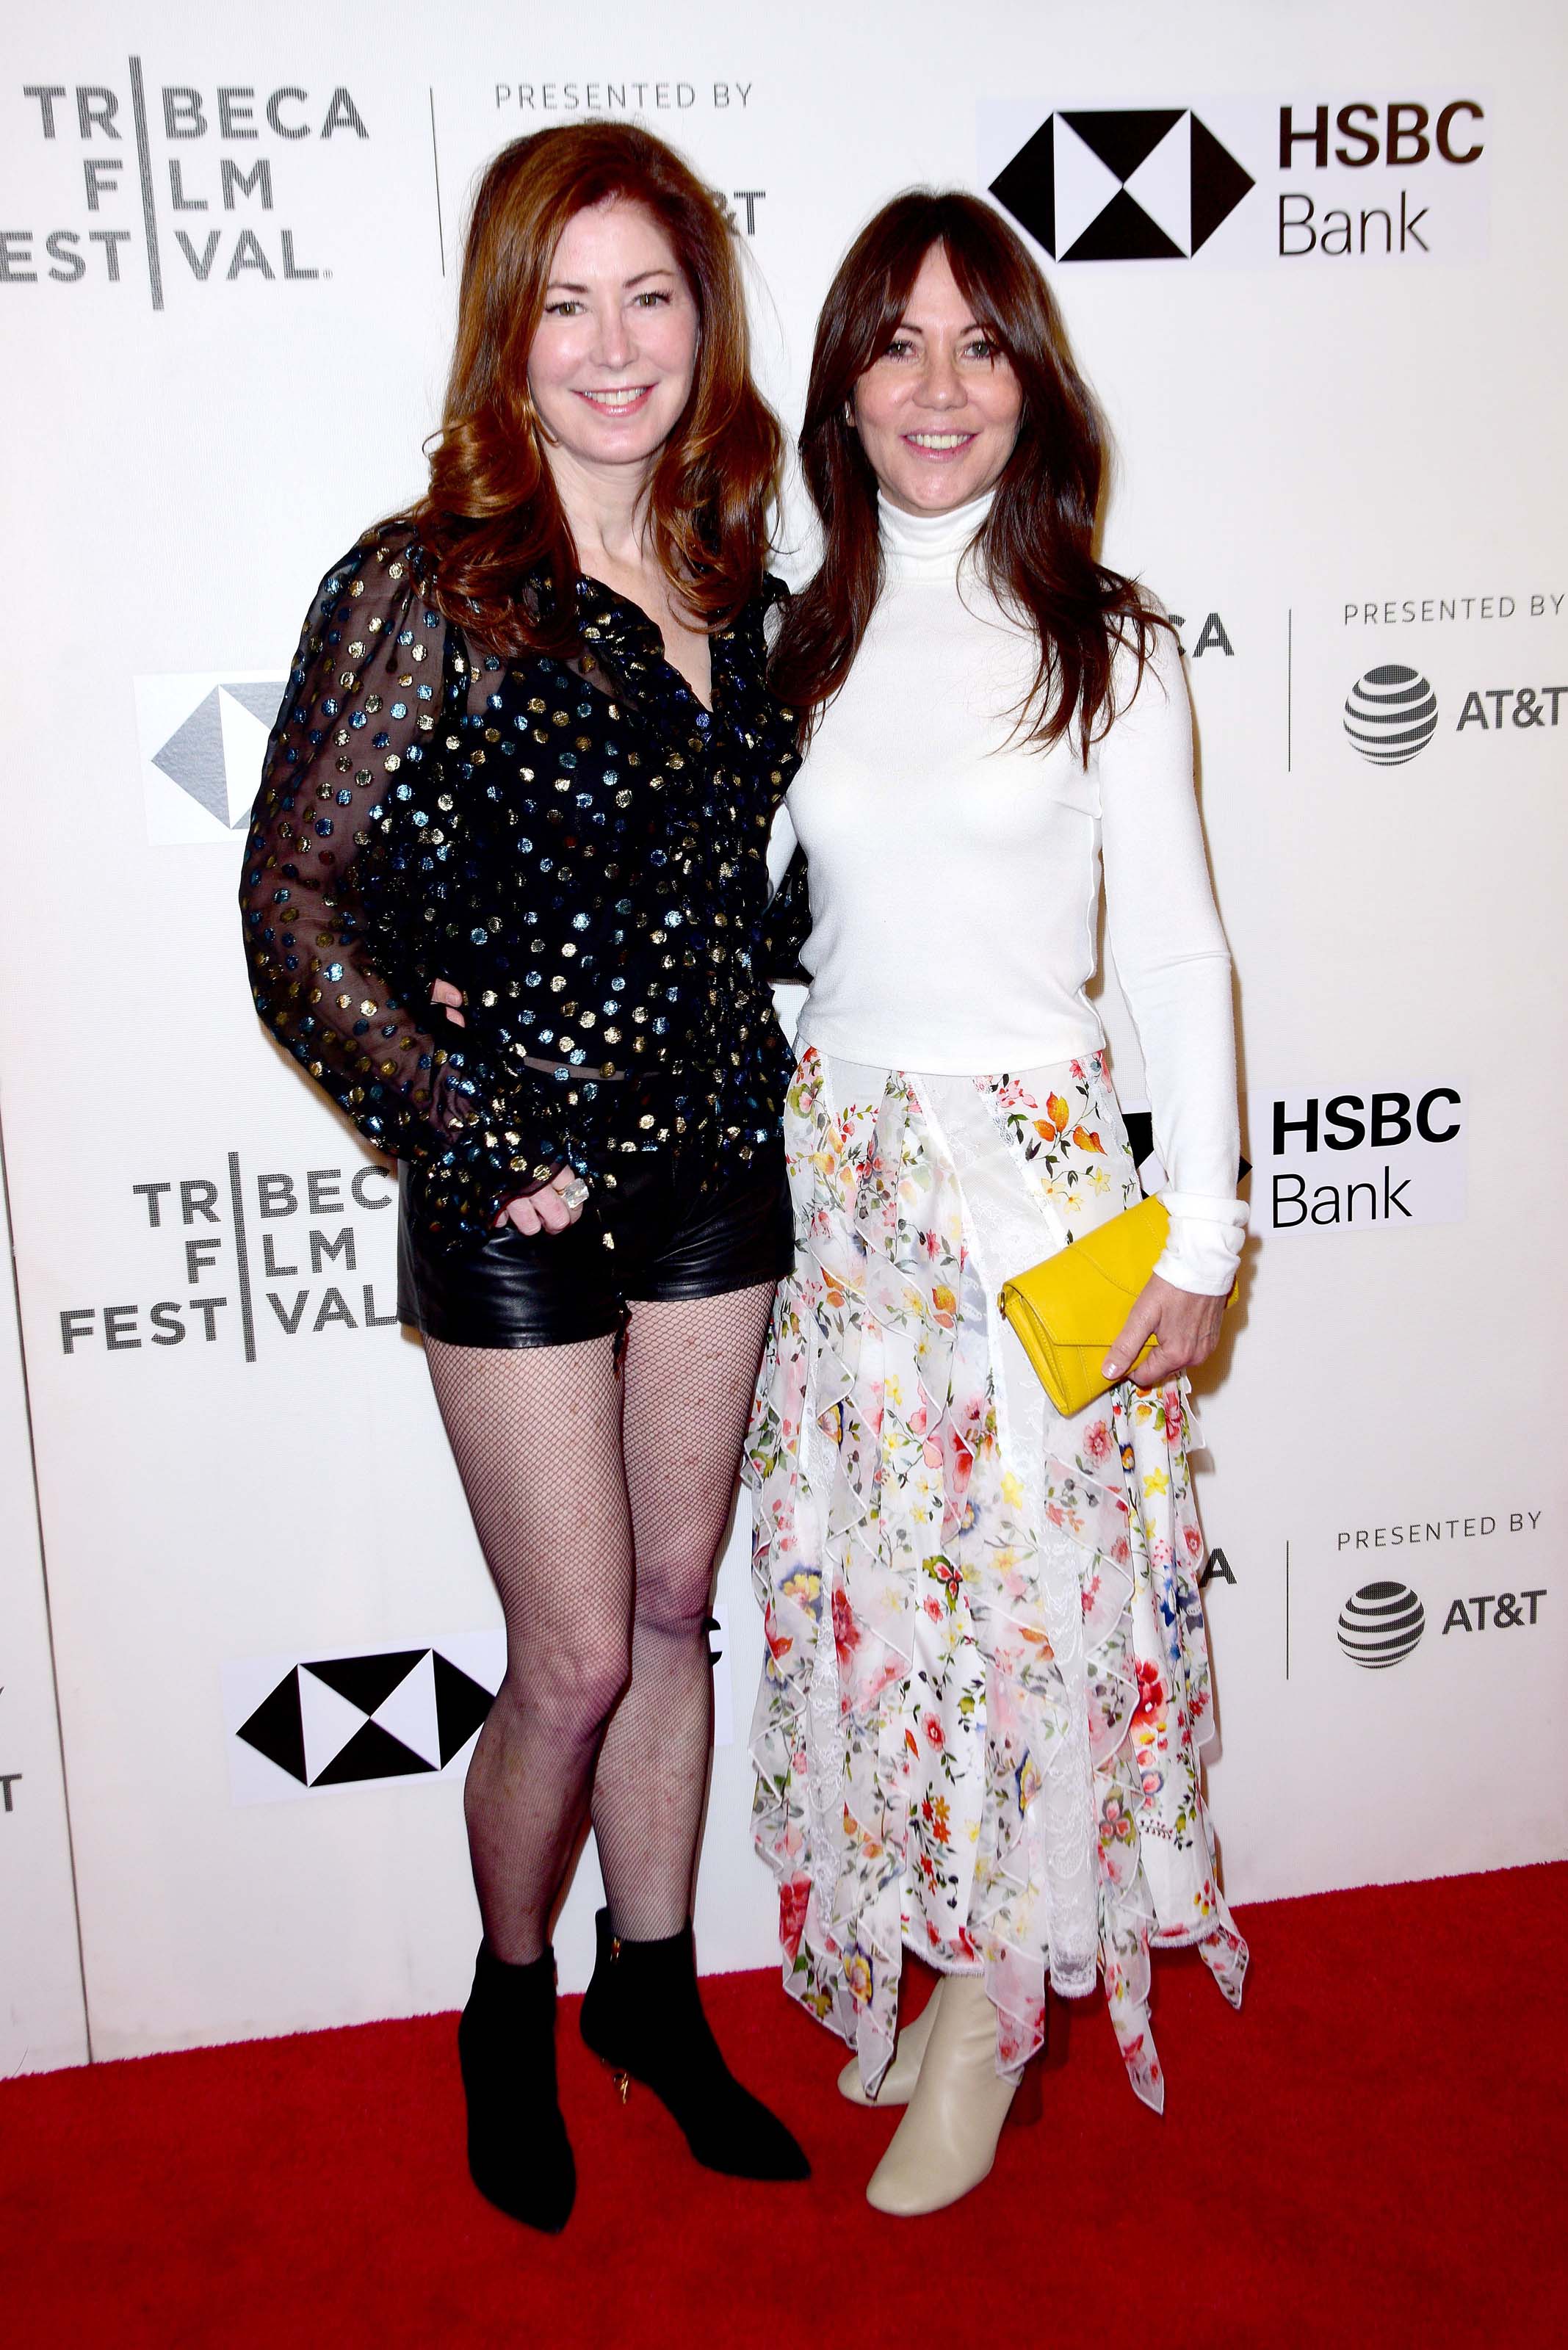 Dana Delany attends Tribeca Film Festival premiere